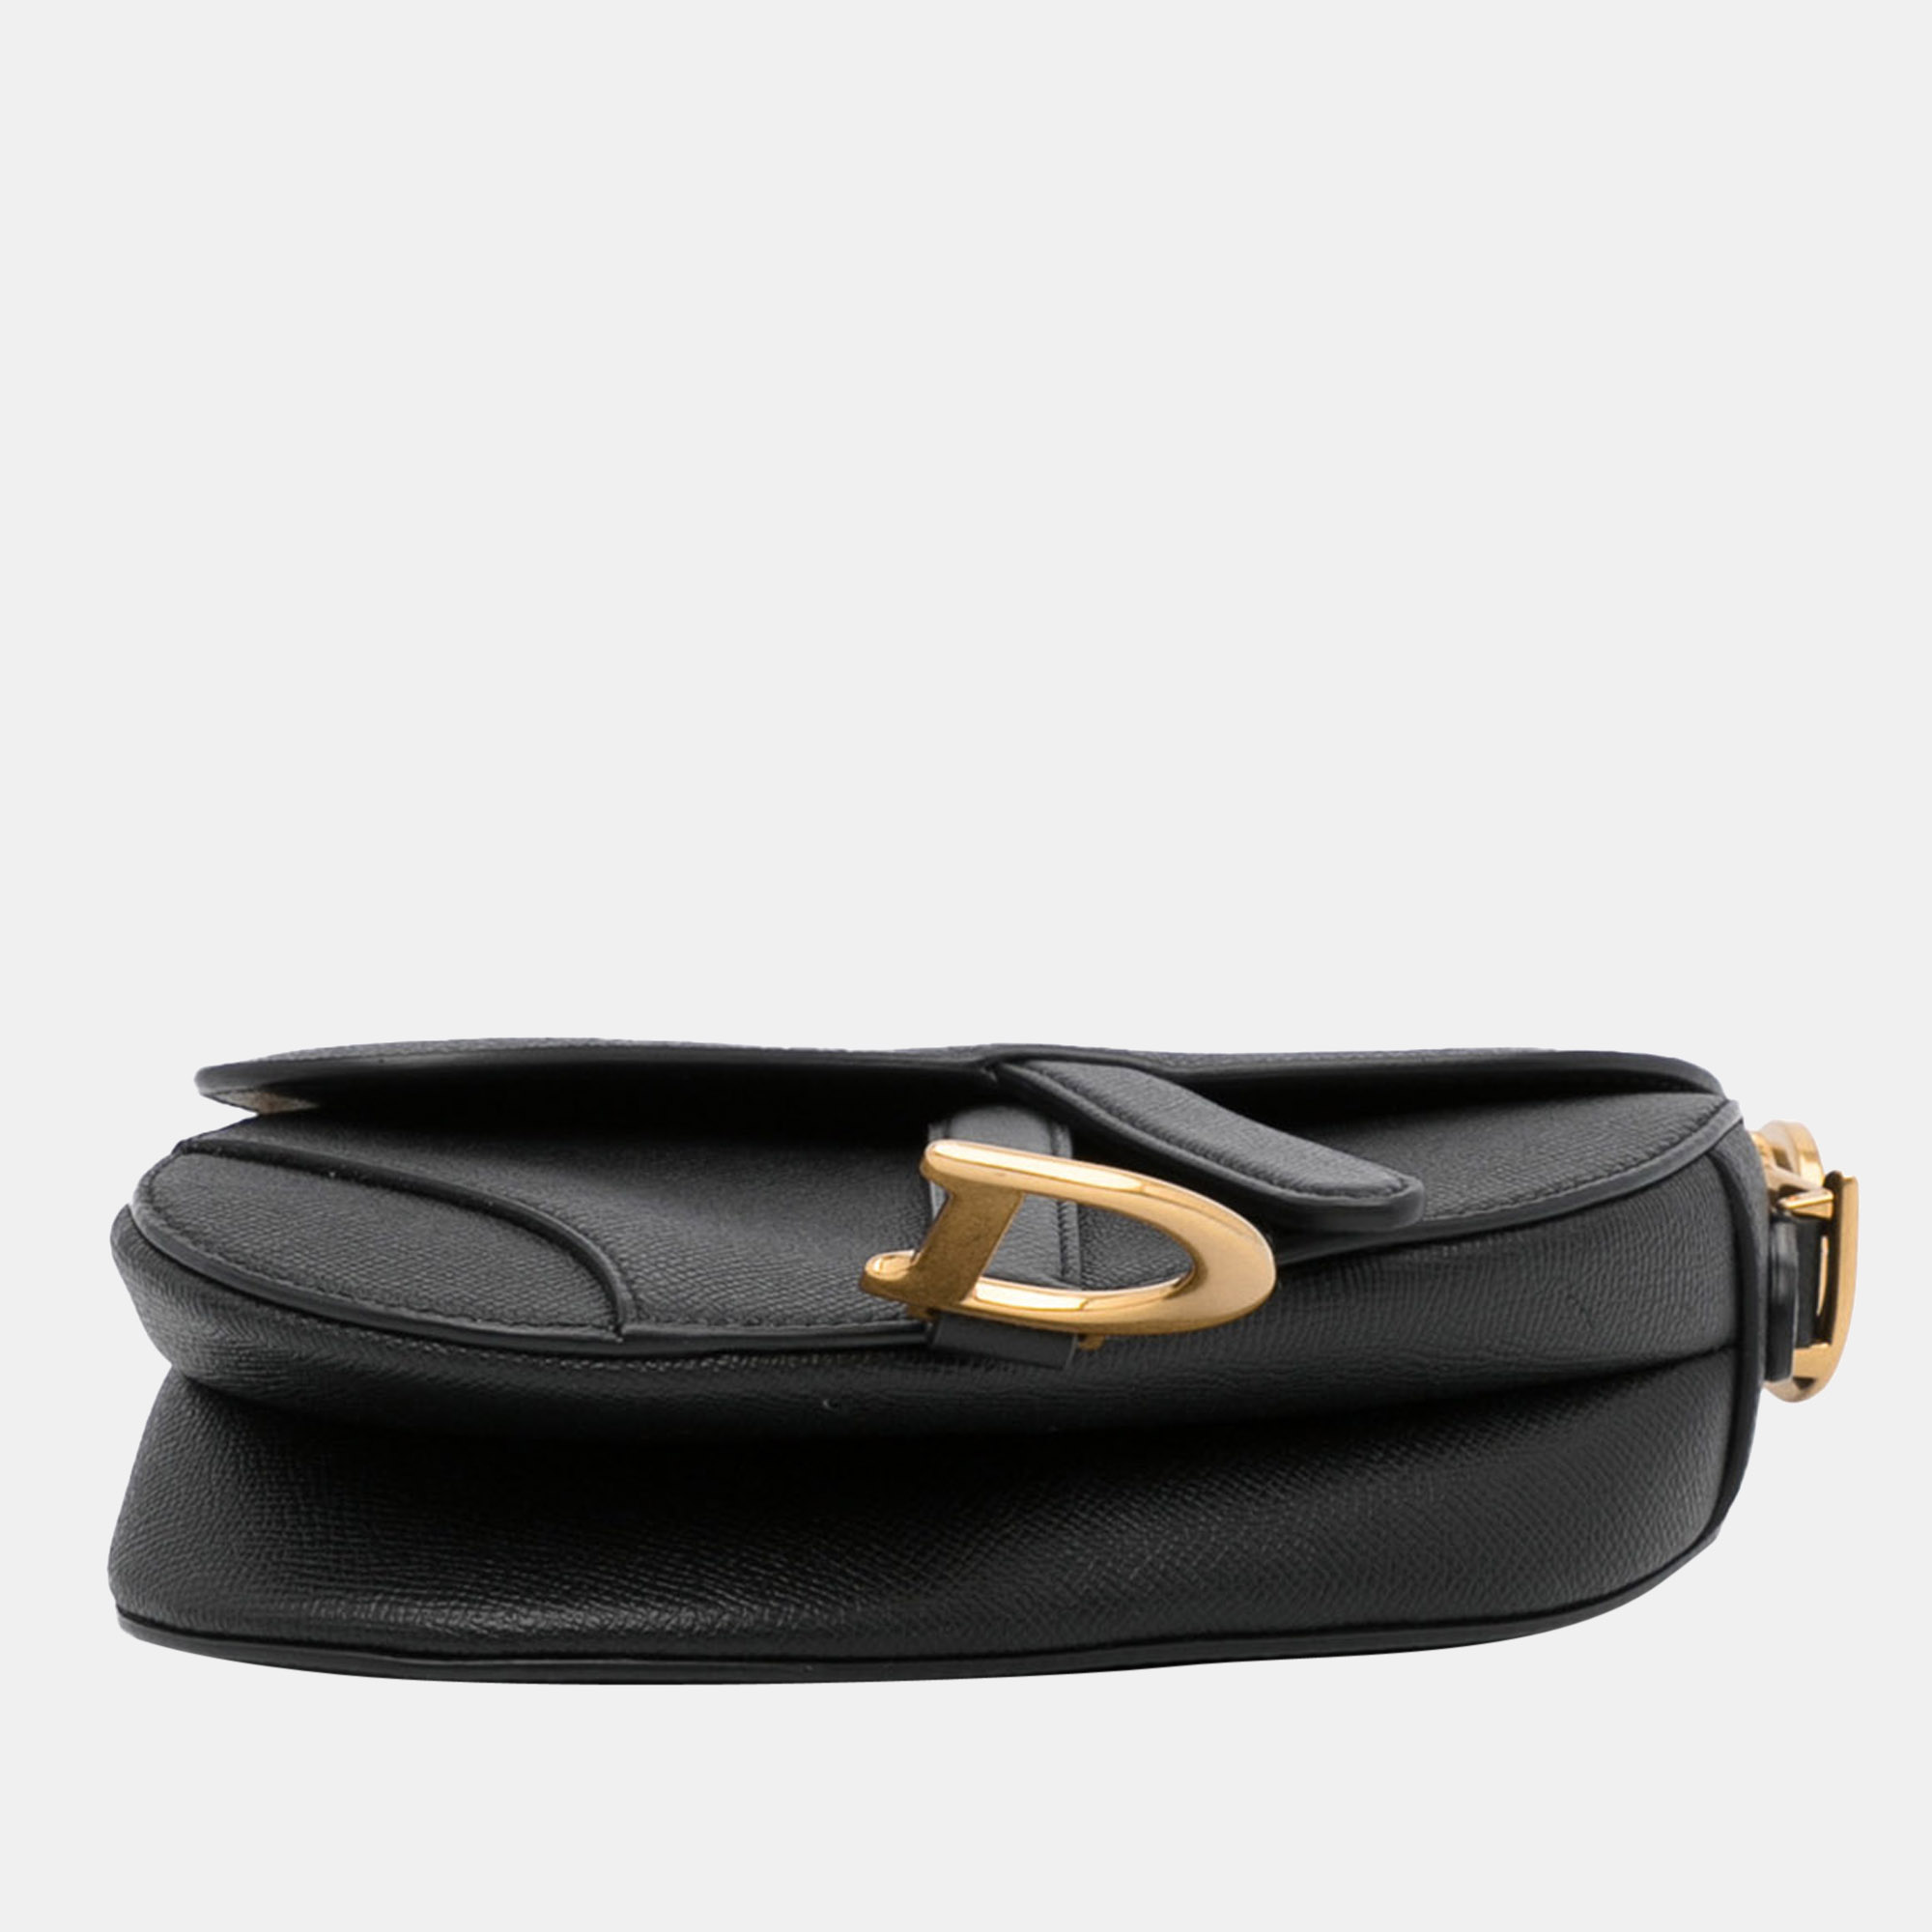 Dior Black Mini Leather Saddle